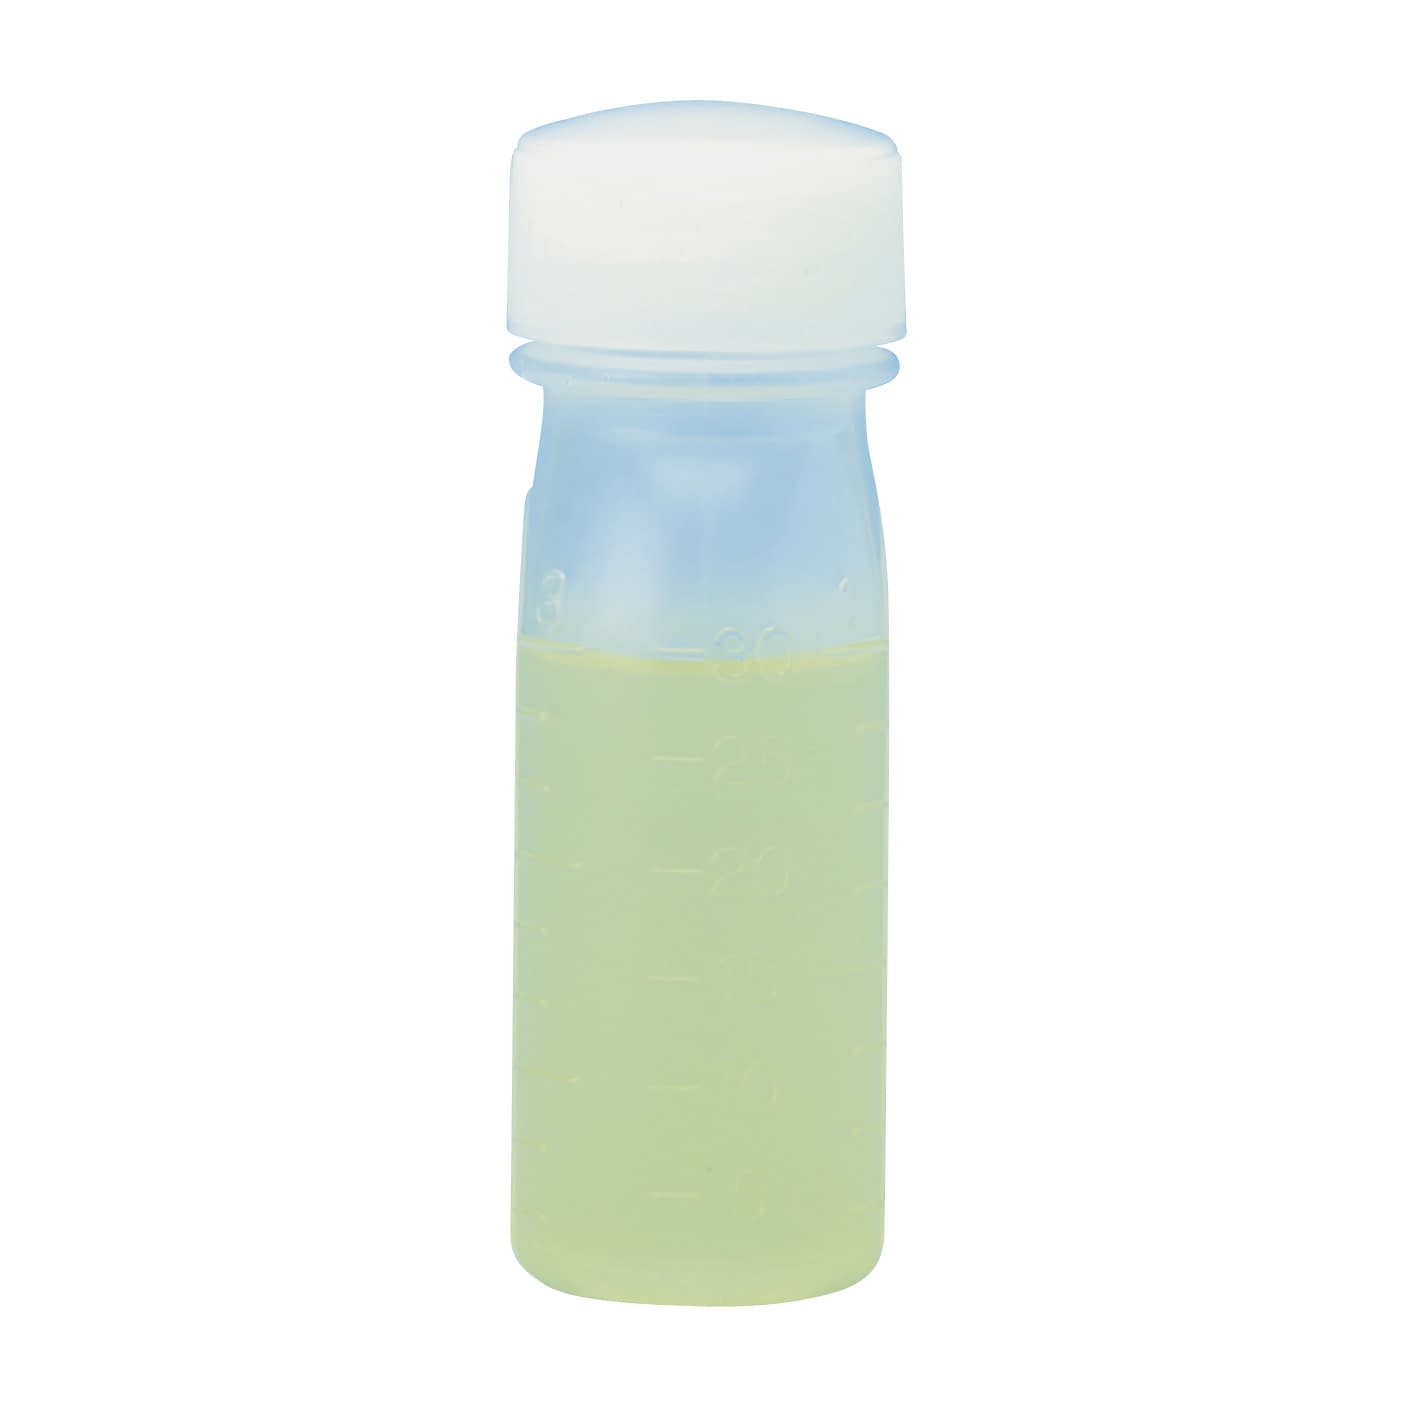 サンケミ 1型投薬瓶 10006 300CC 50ホン 投薬瓶 25-2826-05300cc緑【サンケミカル】(10006)(25-2826-05-05)